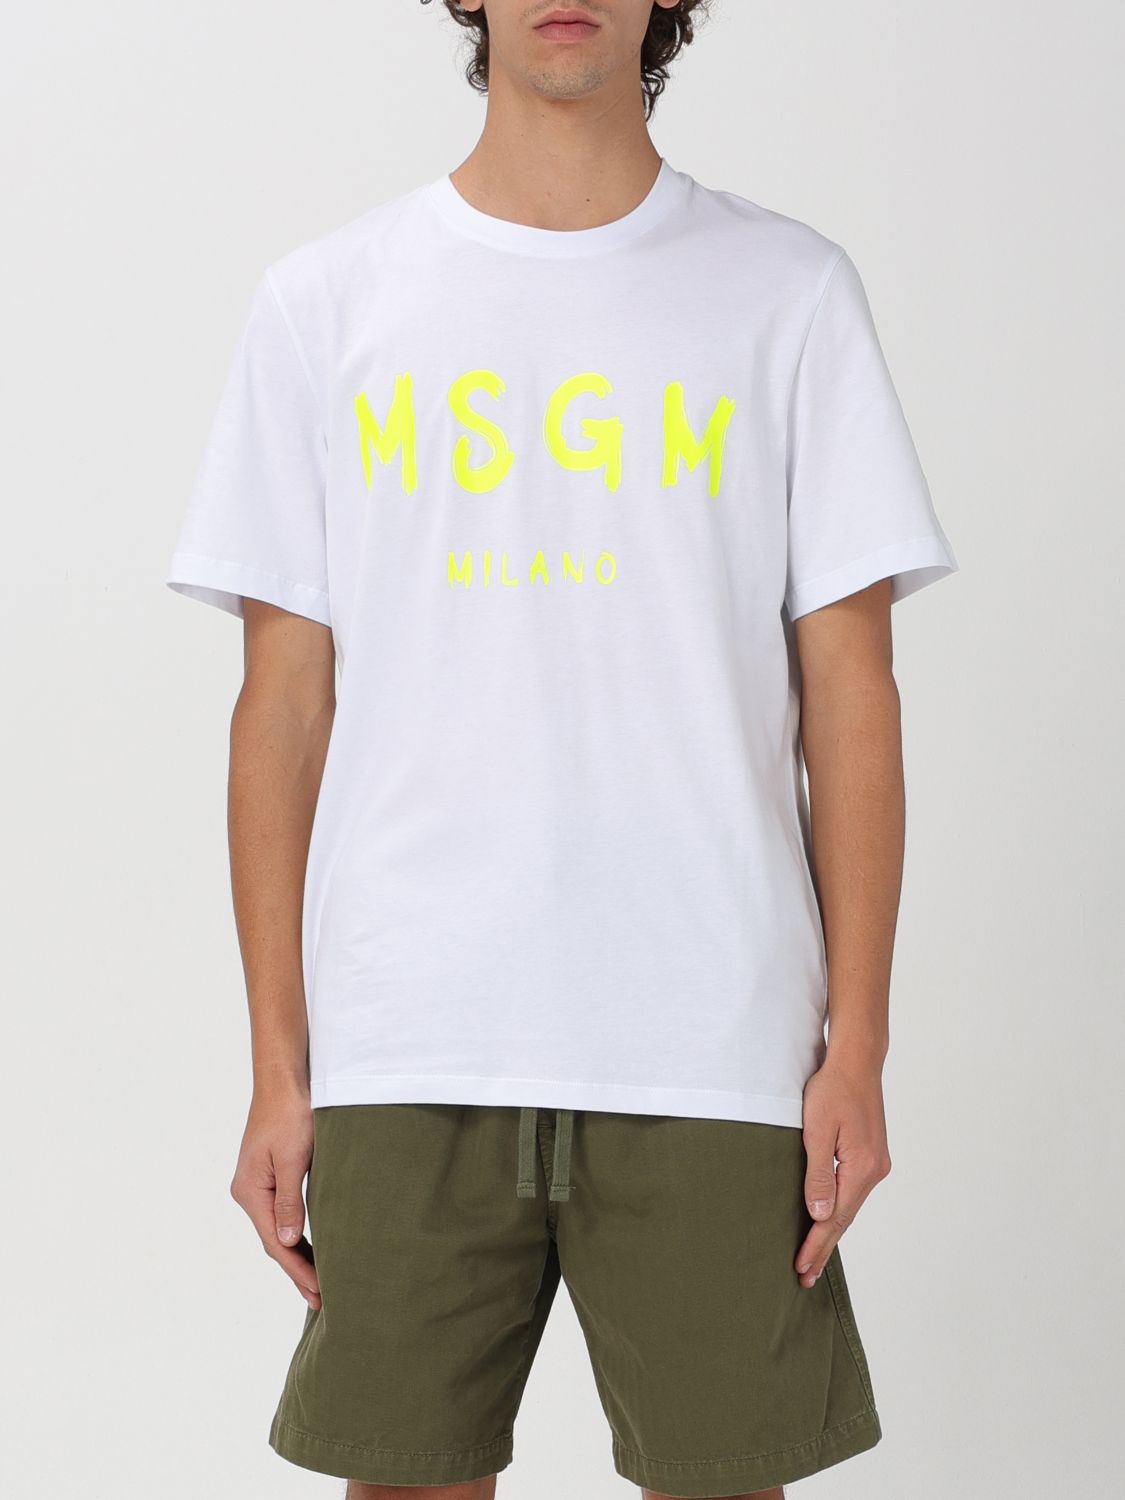 Msgm T-Shirt MSGM Men color White